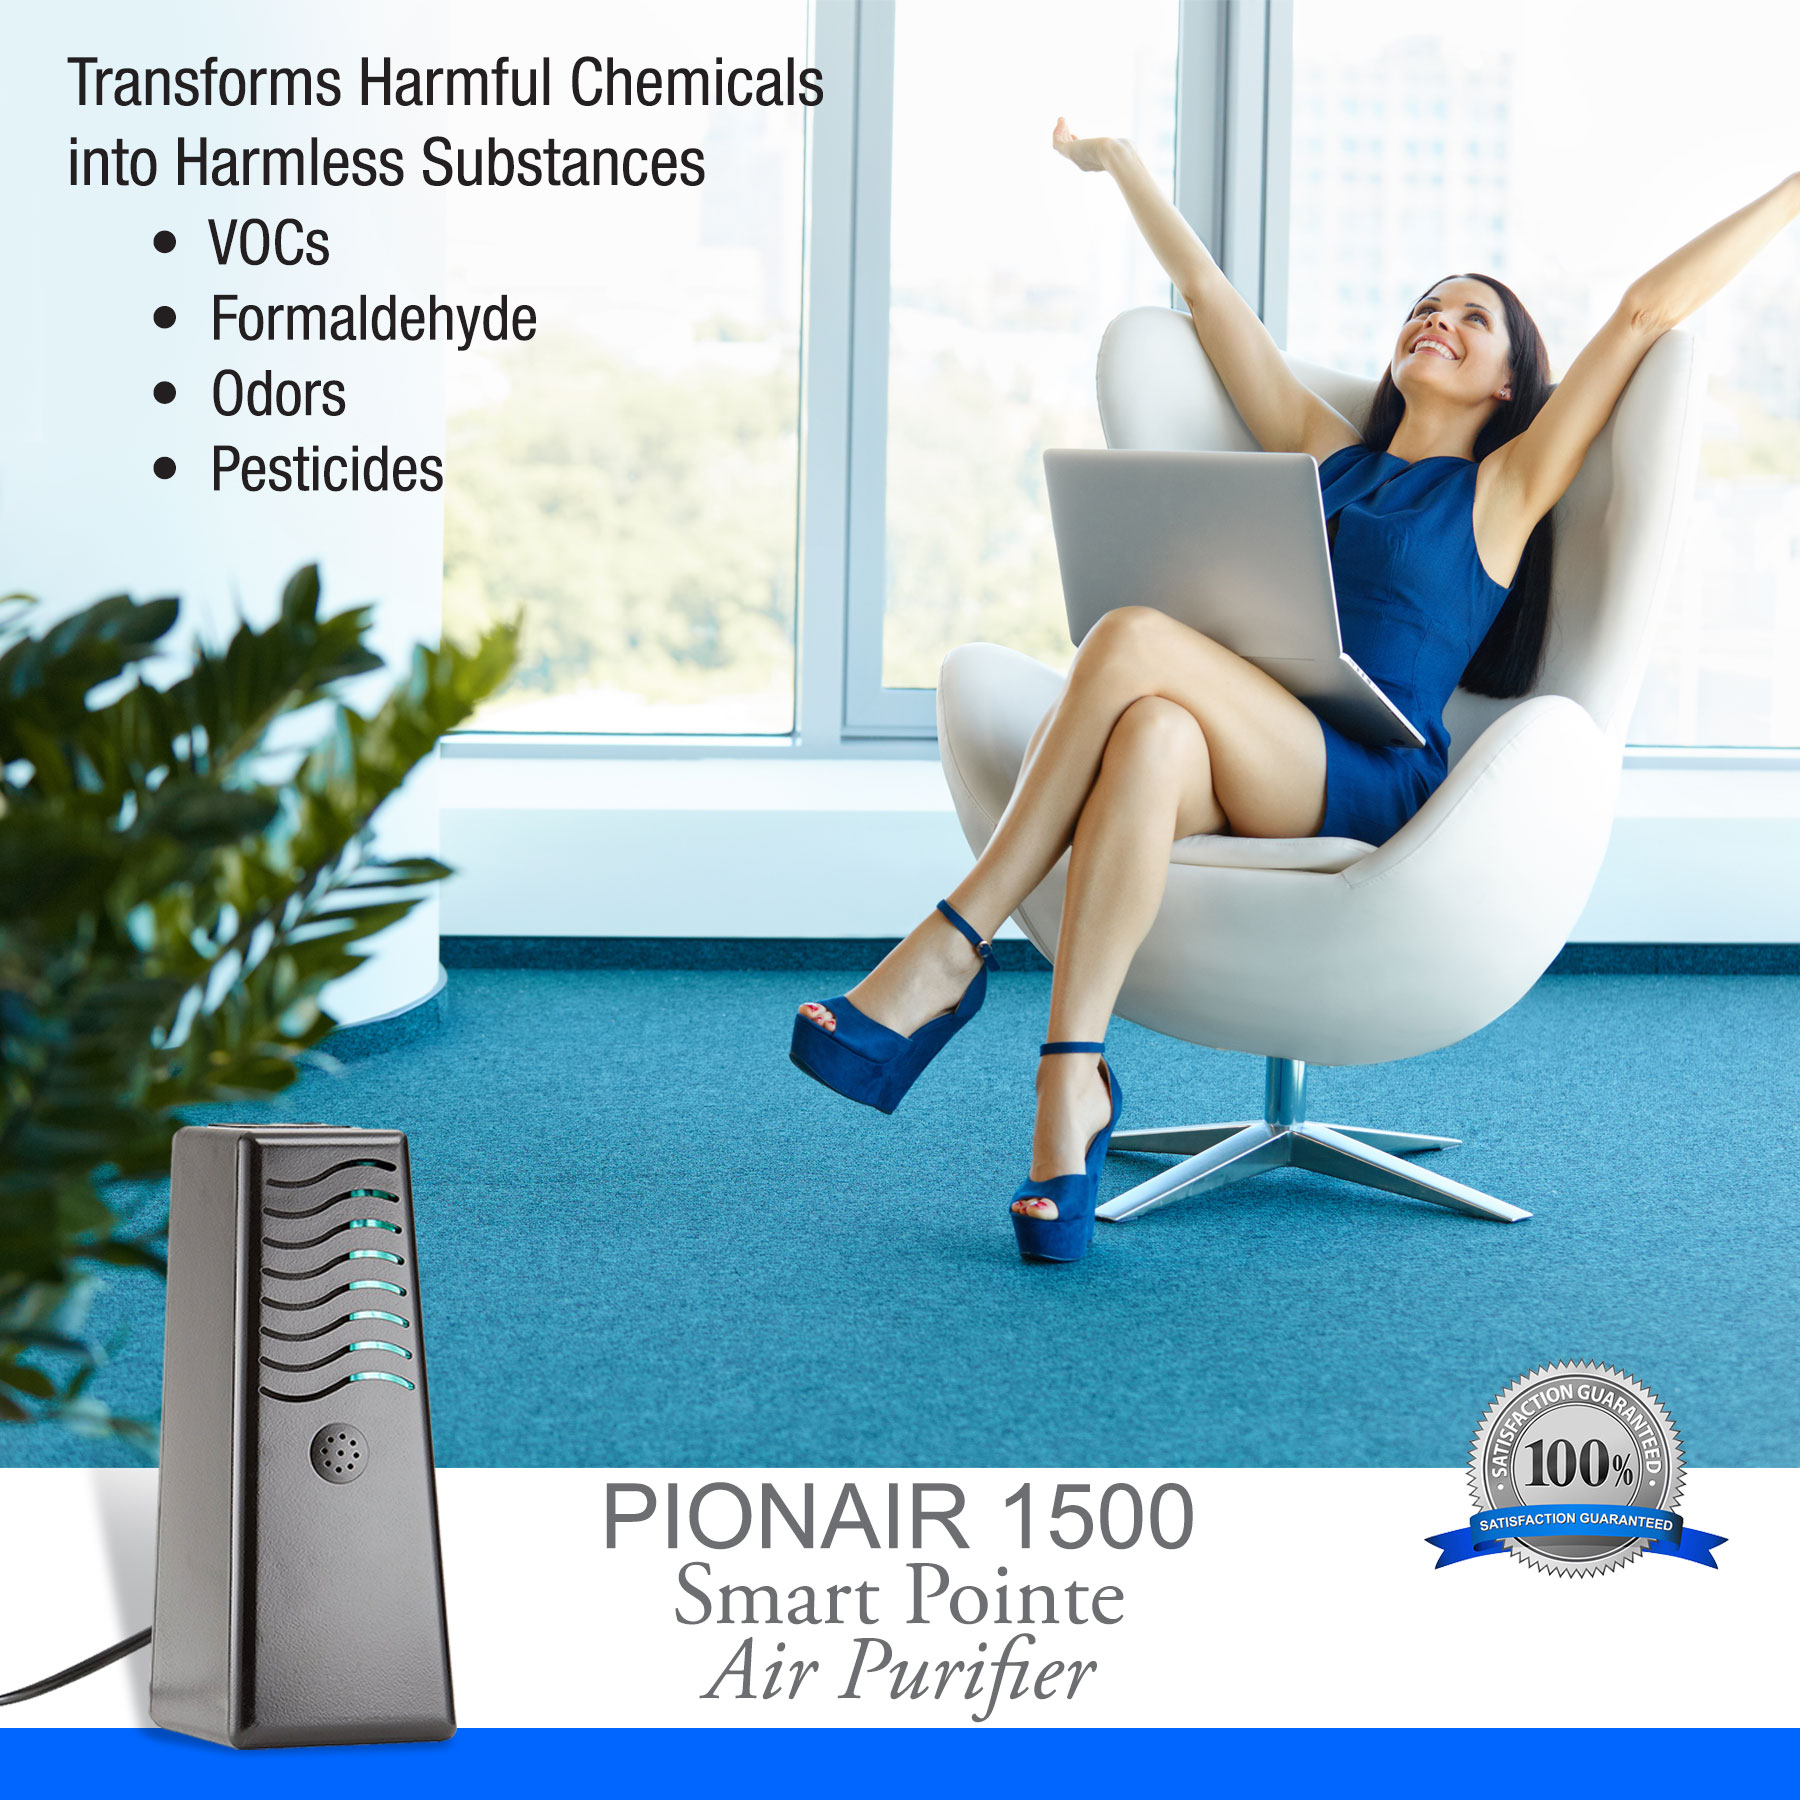 PIONAIR 1500 Smart Pointe - 4 in 1 Whole Home Air Purifier